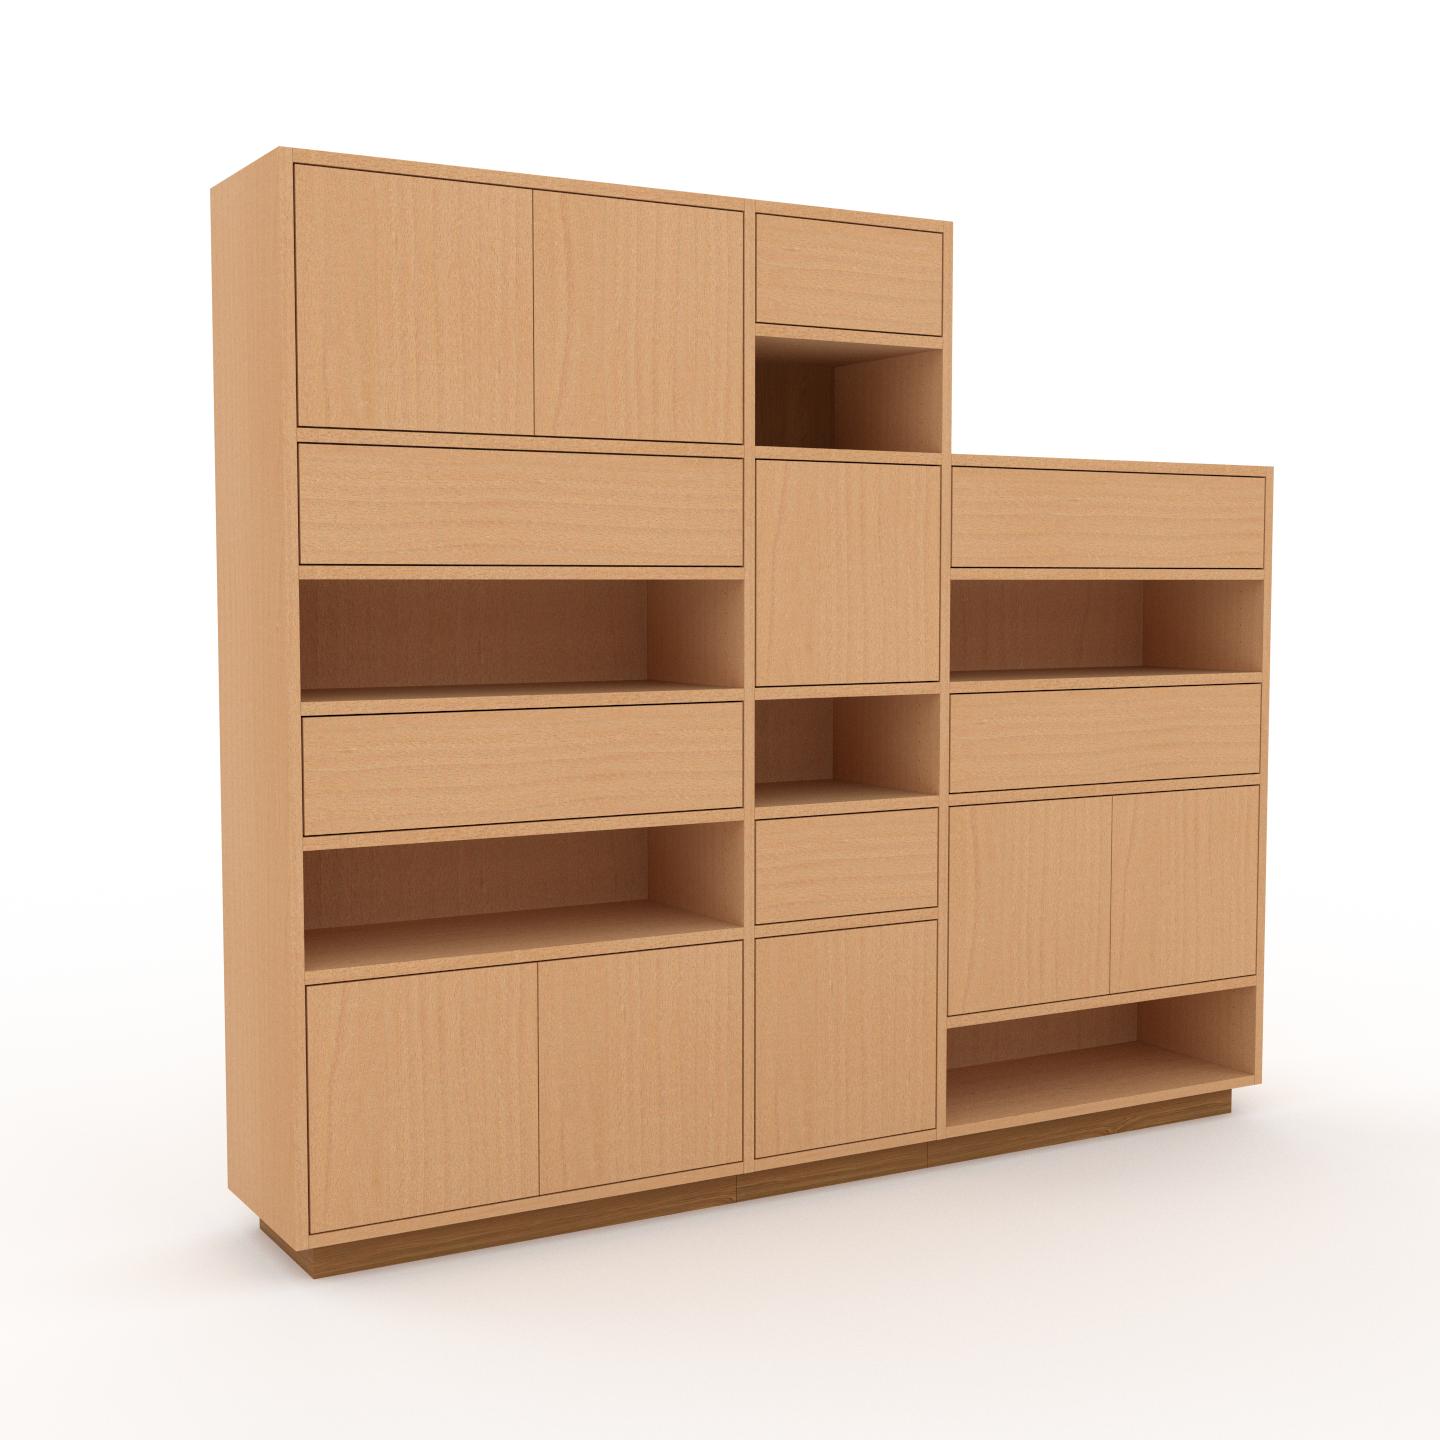 MYCS Sideboard Buche - Sideboard: Schubladen in Buche & Türen in Buche - Hochwertige Materialien - 190 x 162 x 35 cm, konfigurierbar